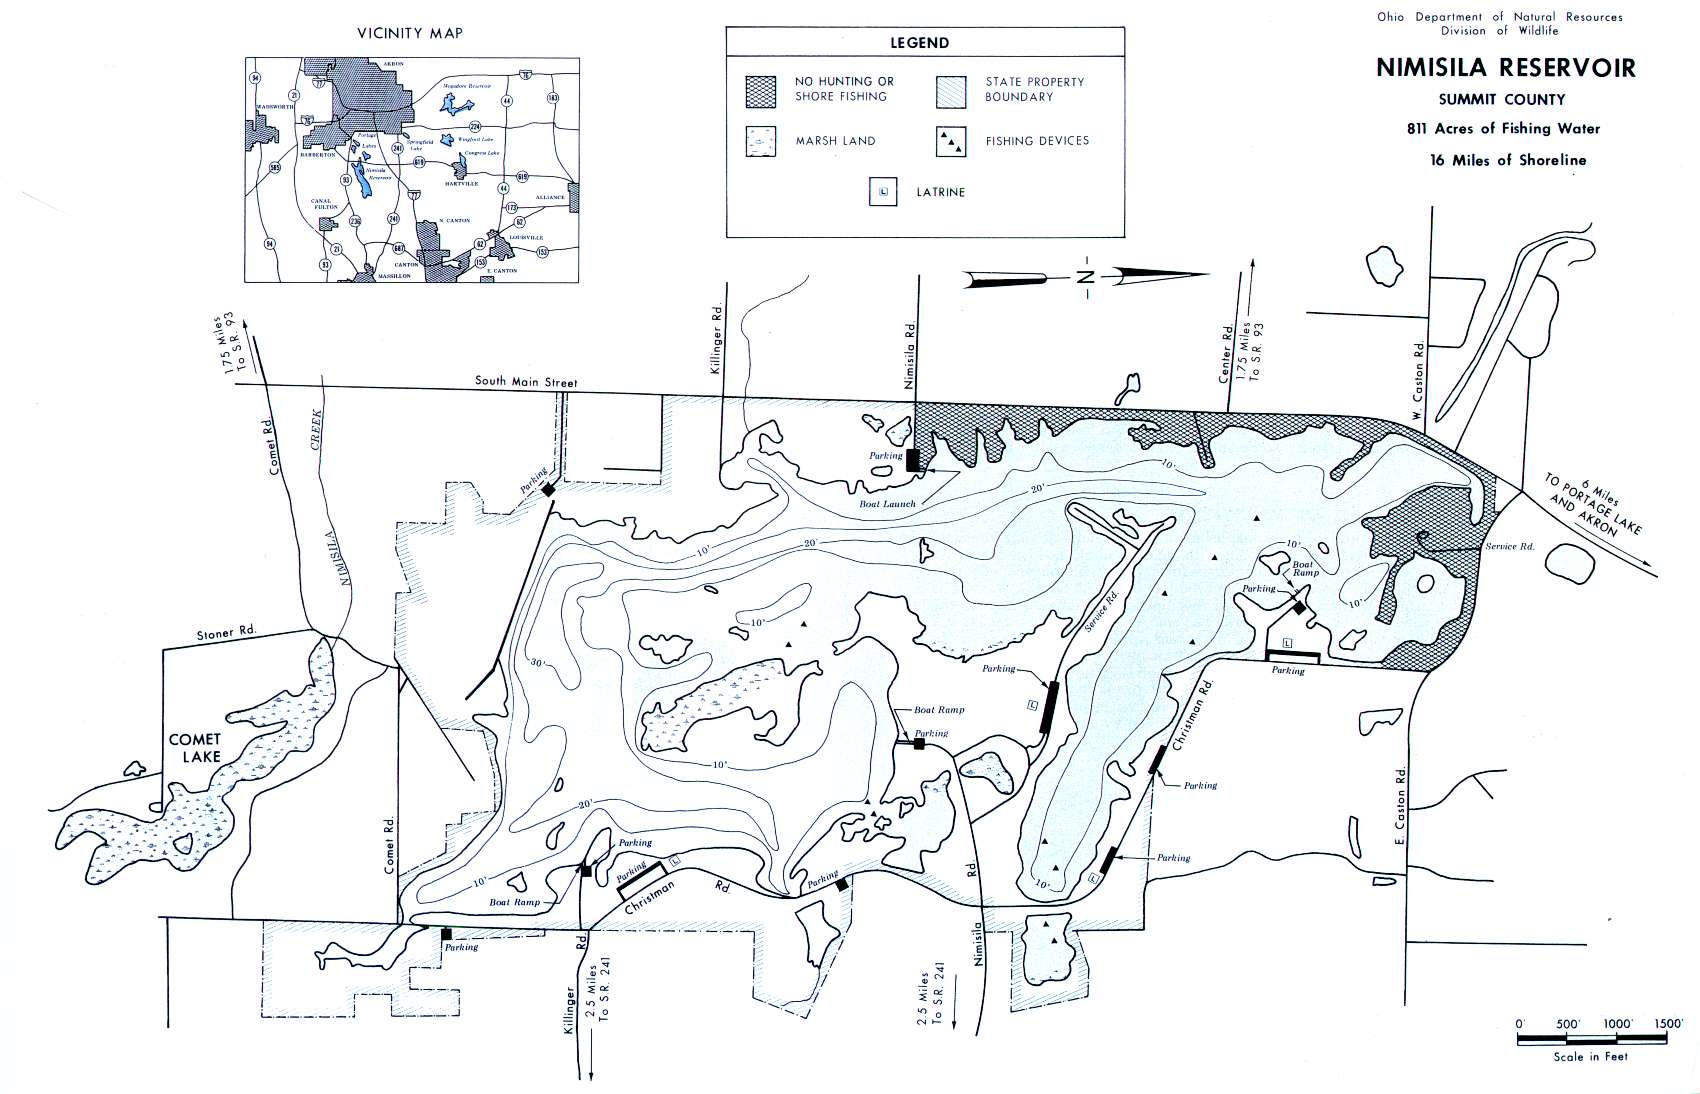 Nimisila Reservoir Fishing Map | Northeast Ohio Fishing